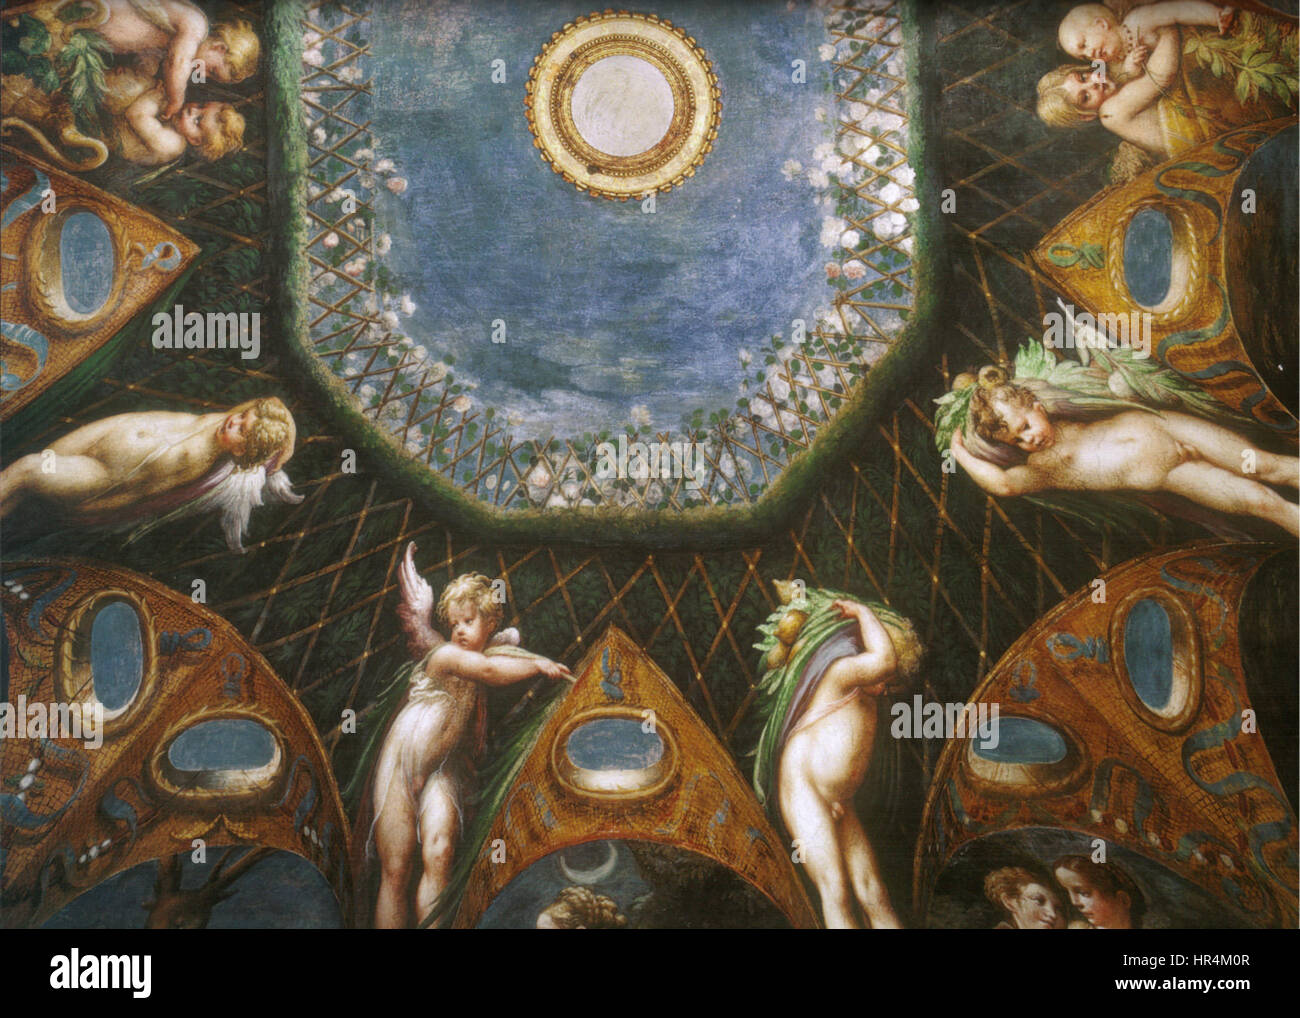 Parmigianino, affreschi di fontanellato 00 Stock Photo